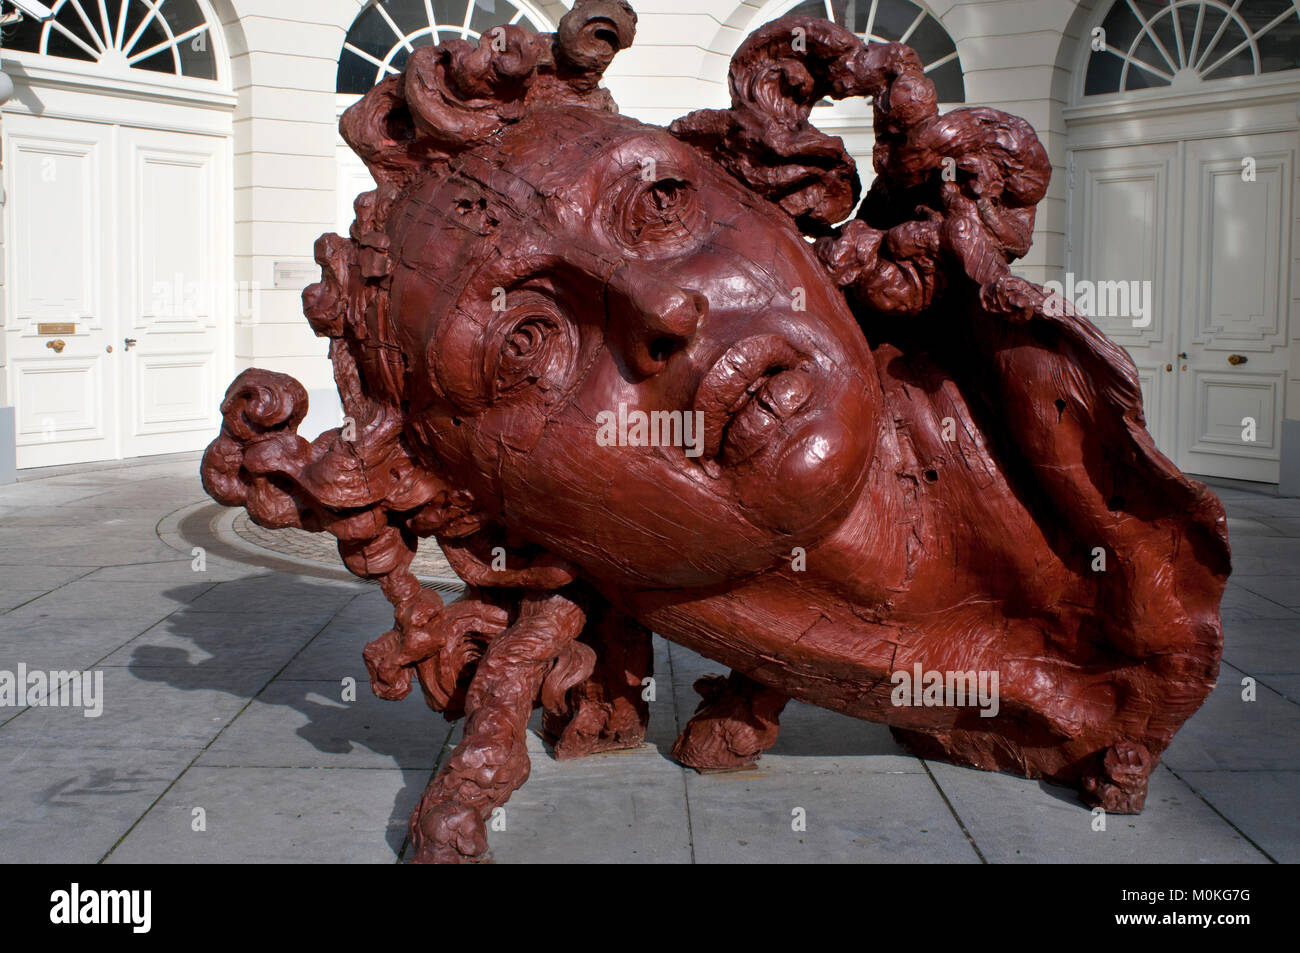 Una escultura de resina de poliéster por el artista mexicano Javier Marín  llamado cabeza de mujer Roja. El Palacio de Charles de Lorraine Musee,  Bruselas, ser Fotografía de stock - Alamy